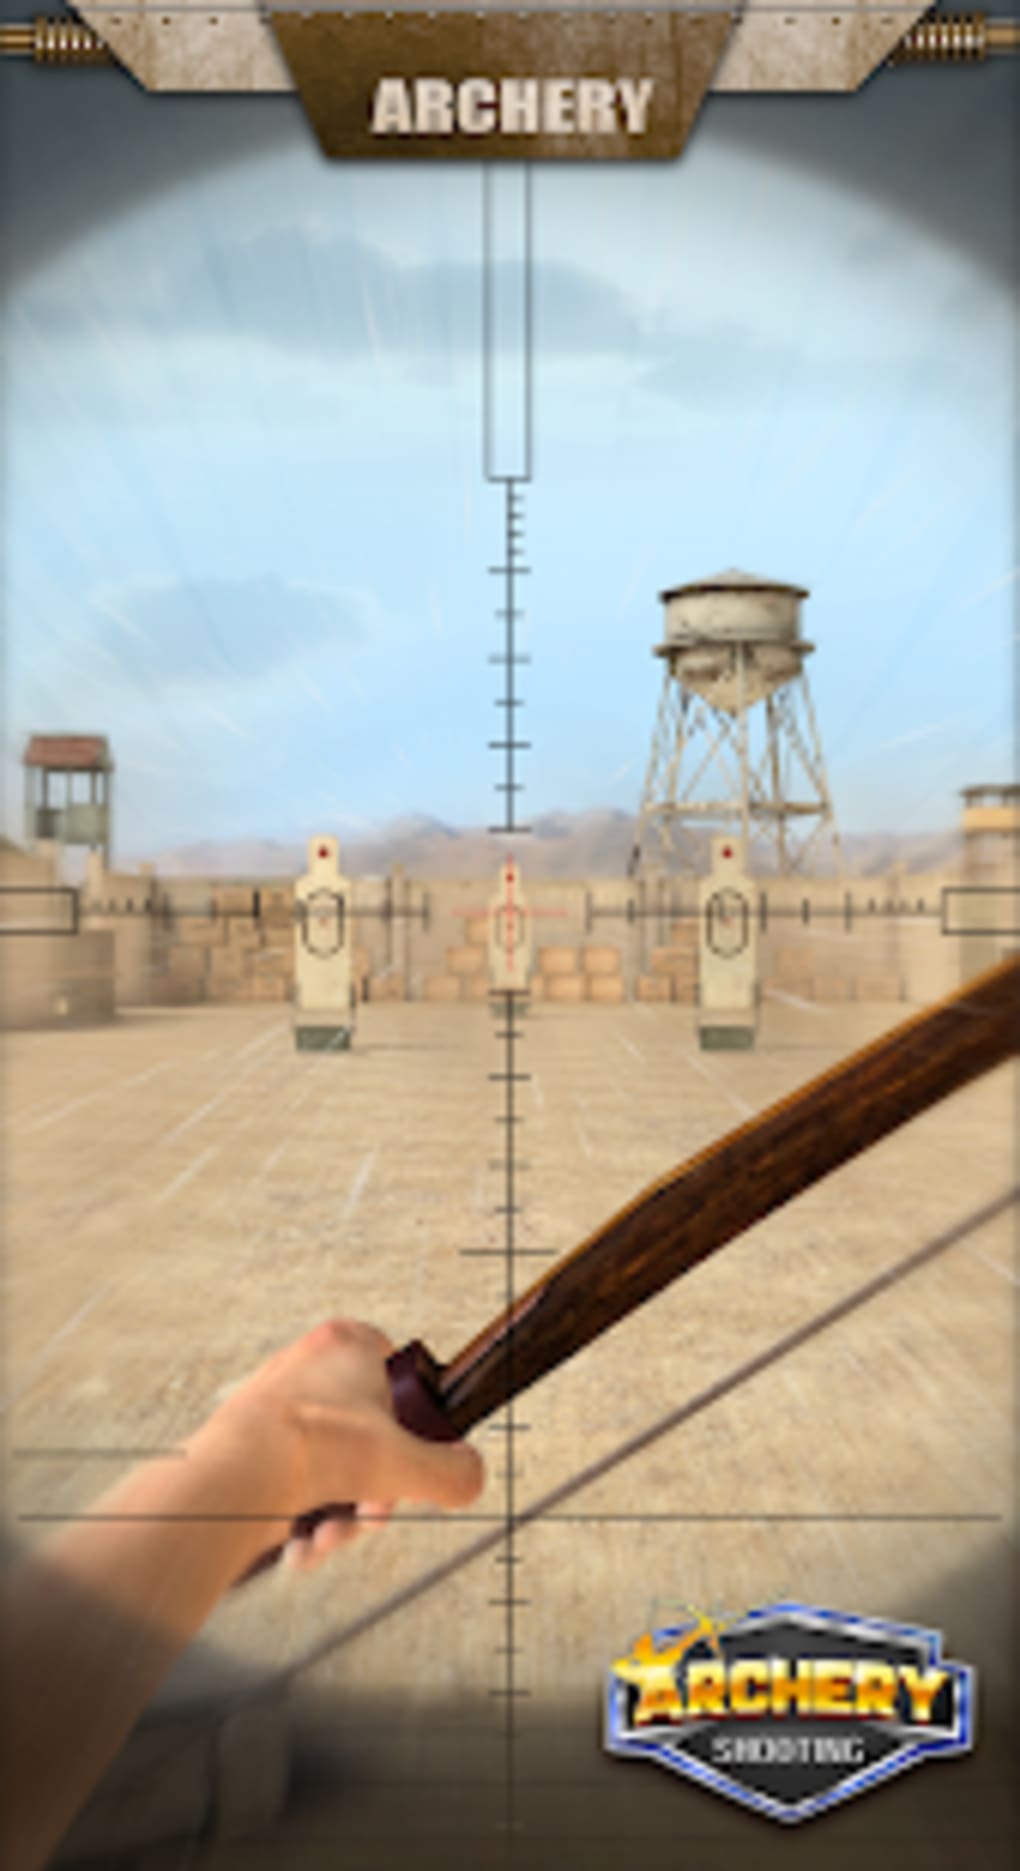 Baixar Archer Champion: Jogo de tiro com arco 3D grátis! para PC